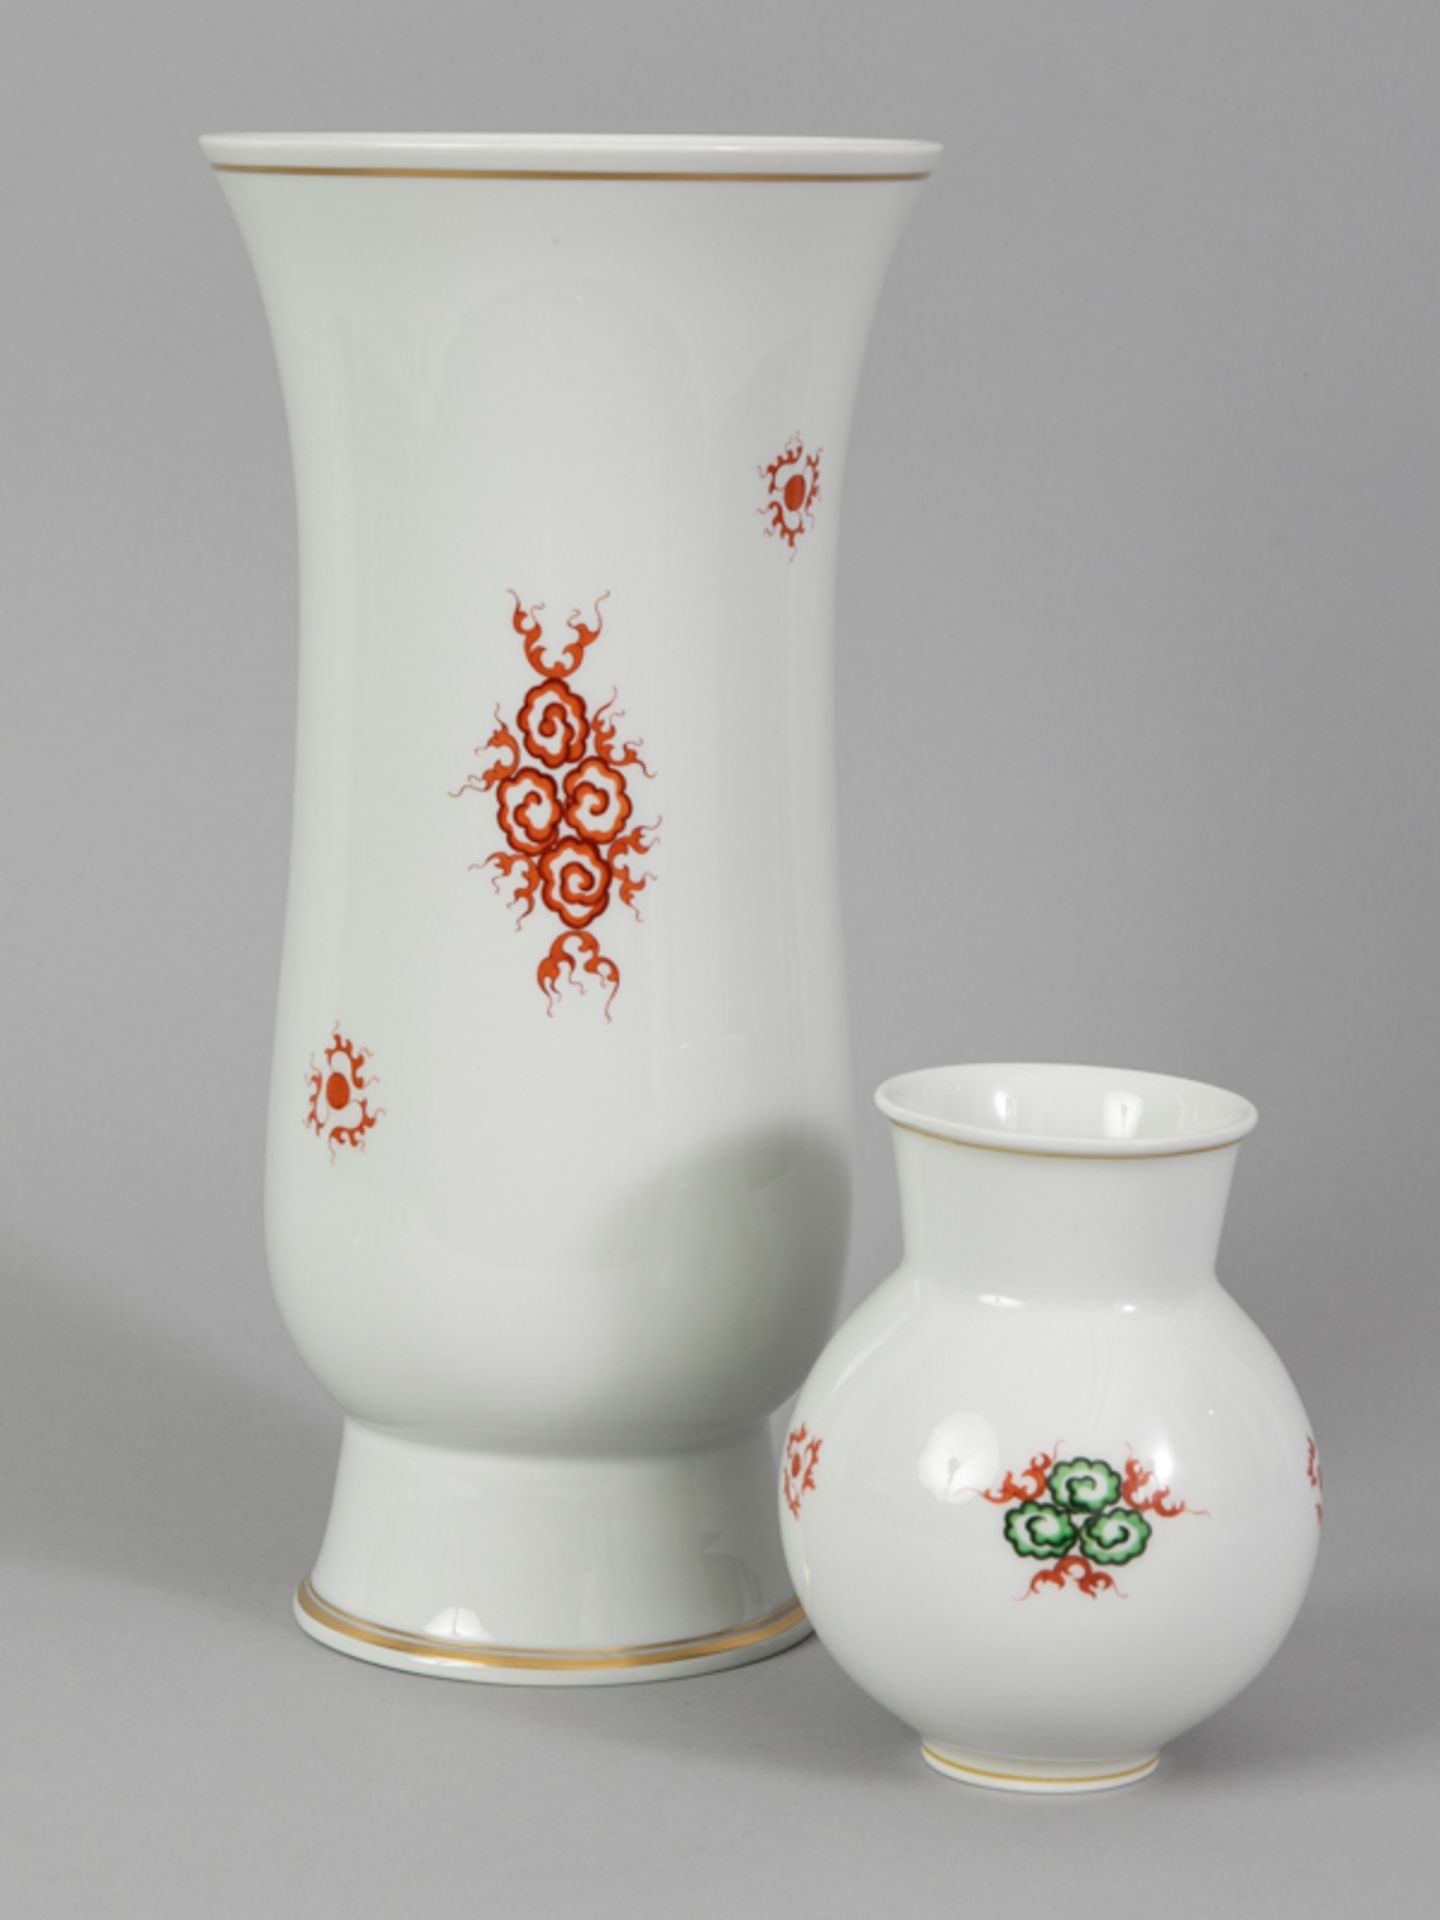 2 Vasen Dekor "Mingdrache", Meissen, 20. Jahrhundert. - Image 2 of 3